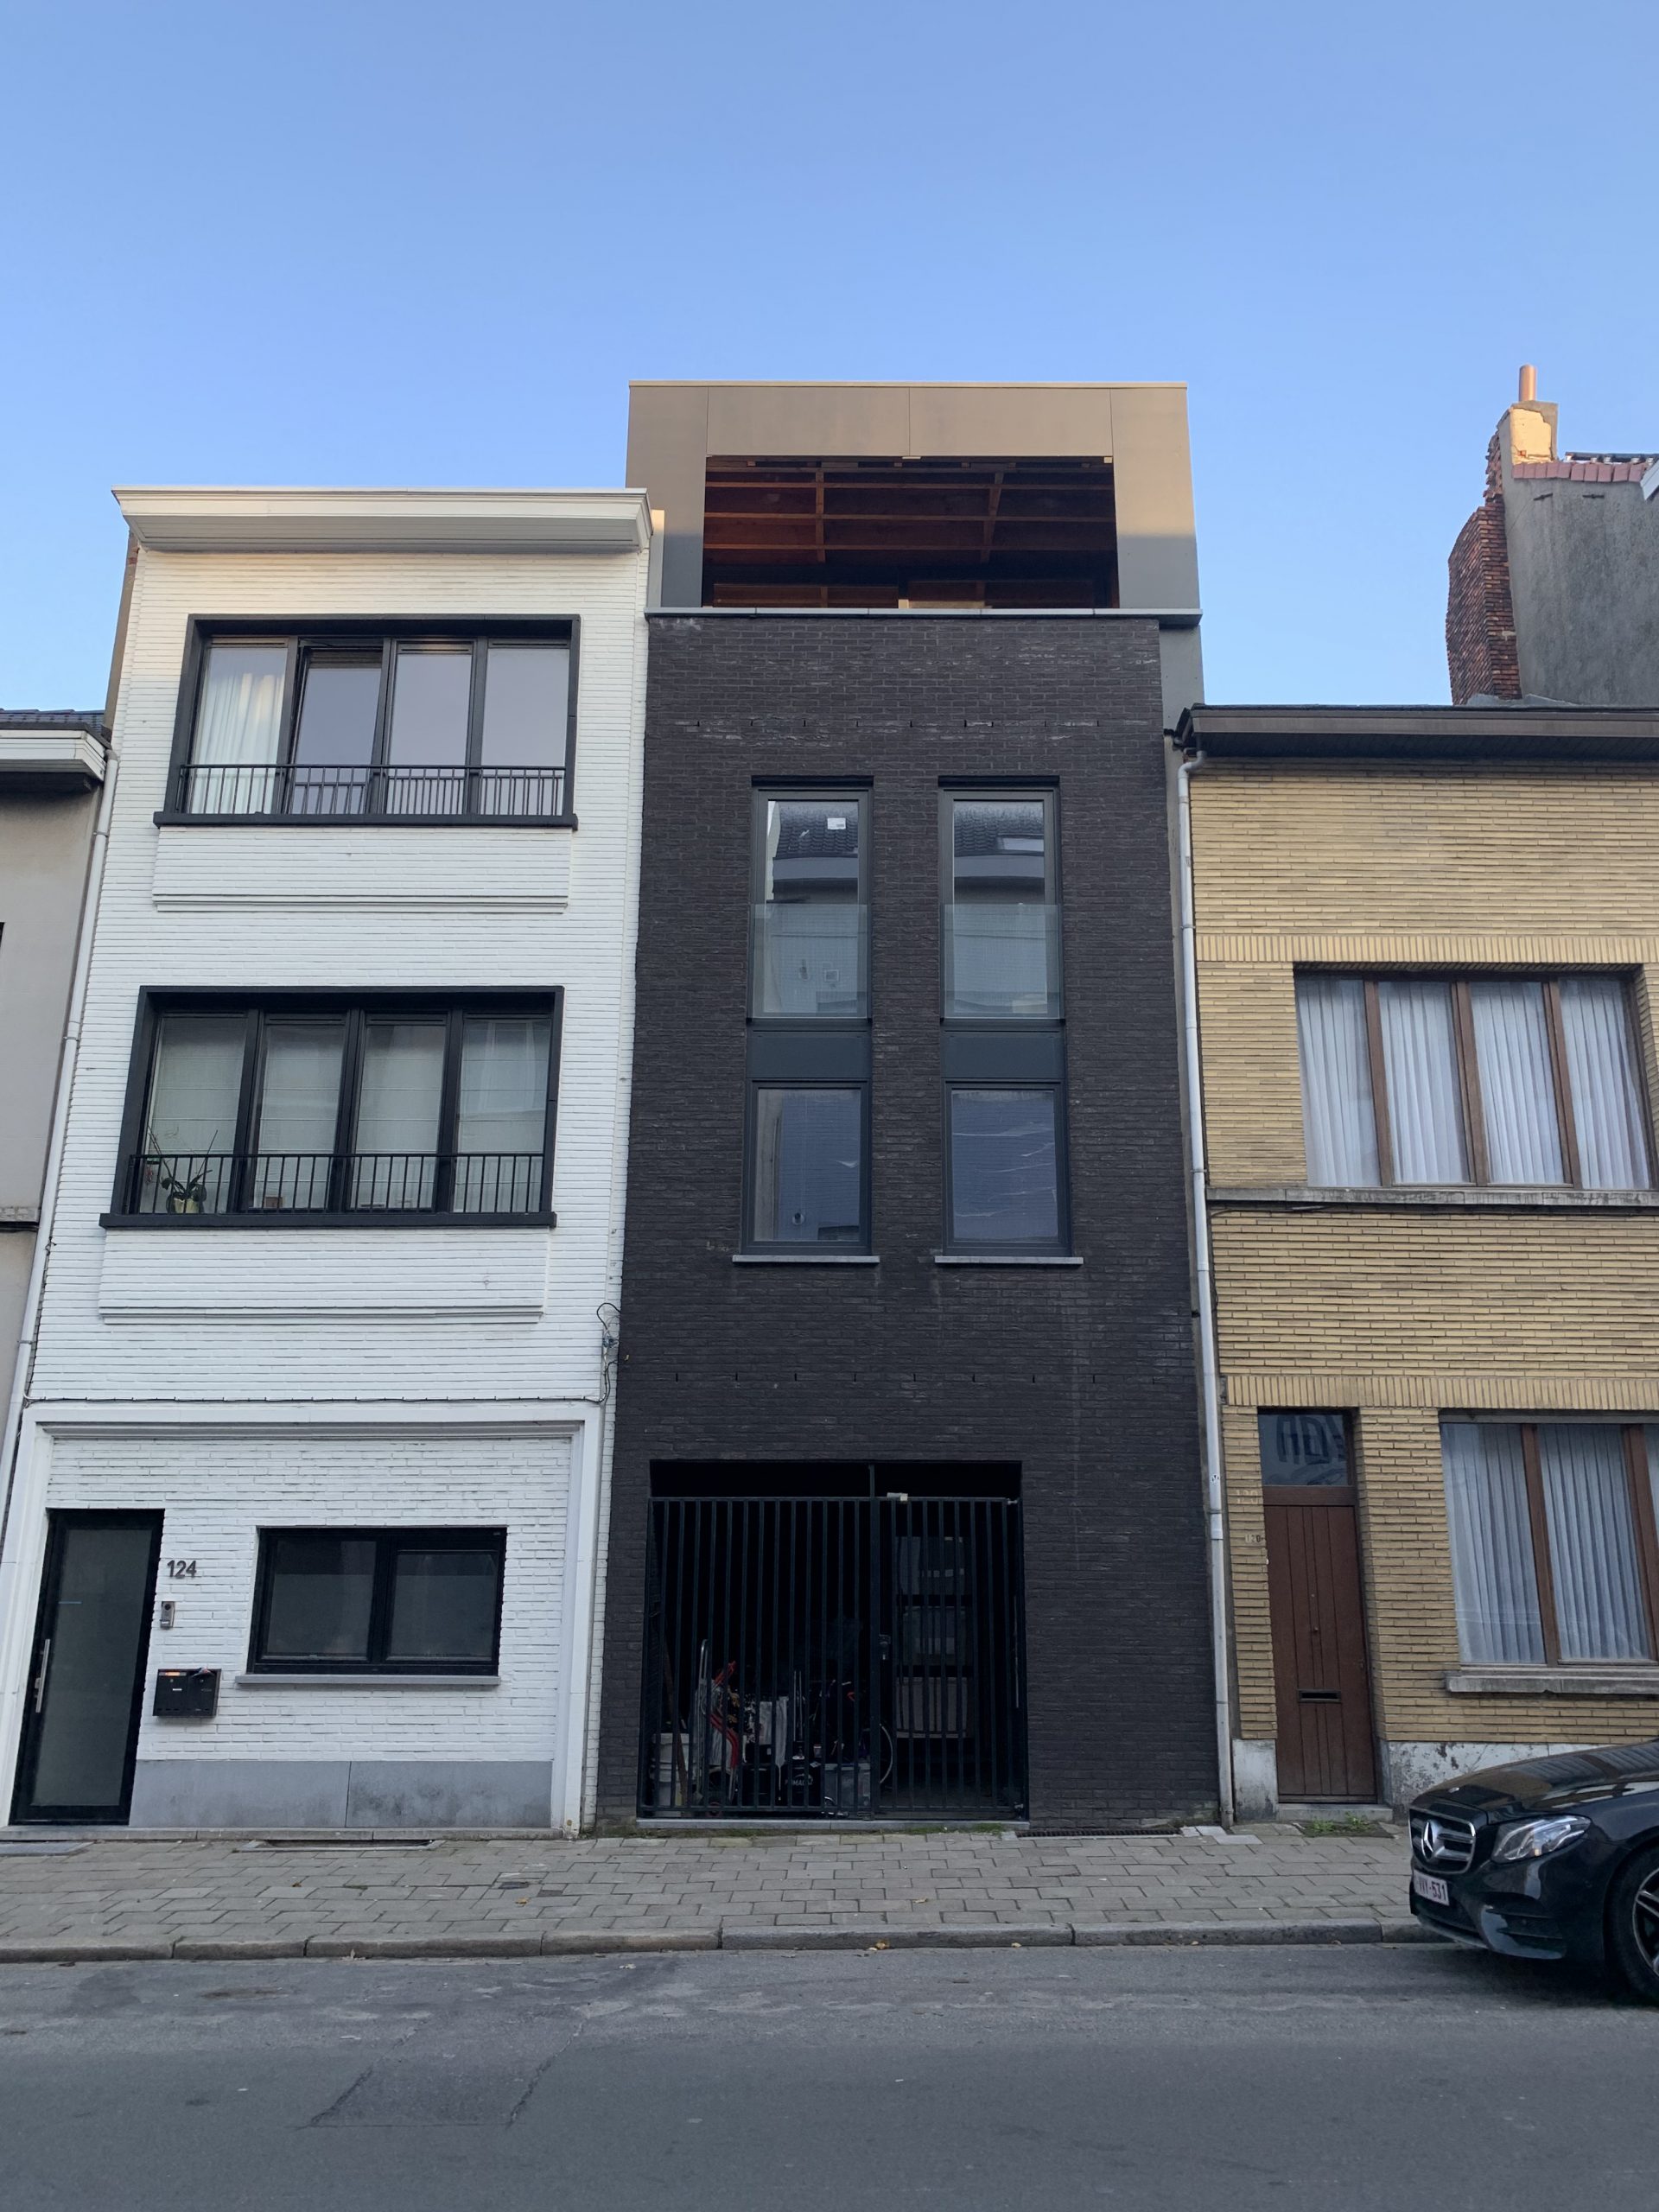 2 Duplex appartementen te Antwerpen (VERKOCHT)